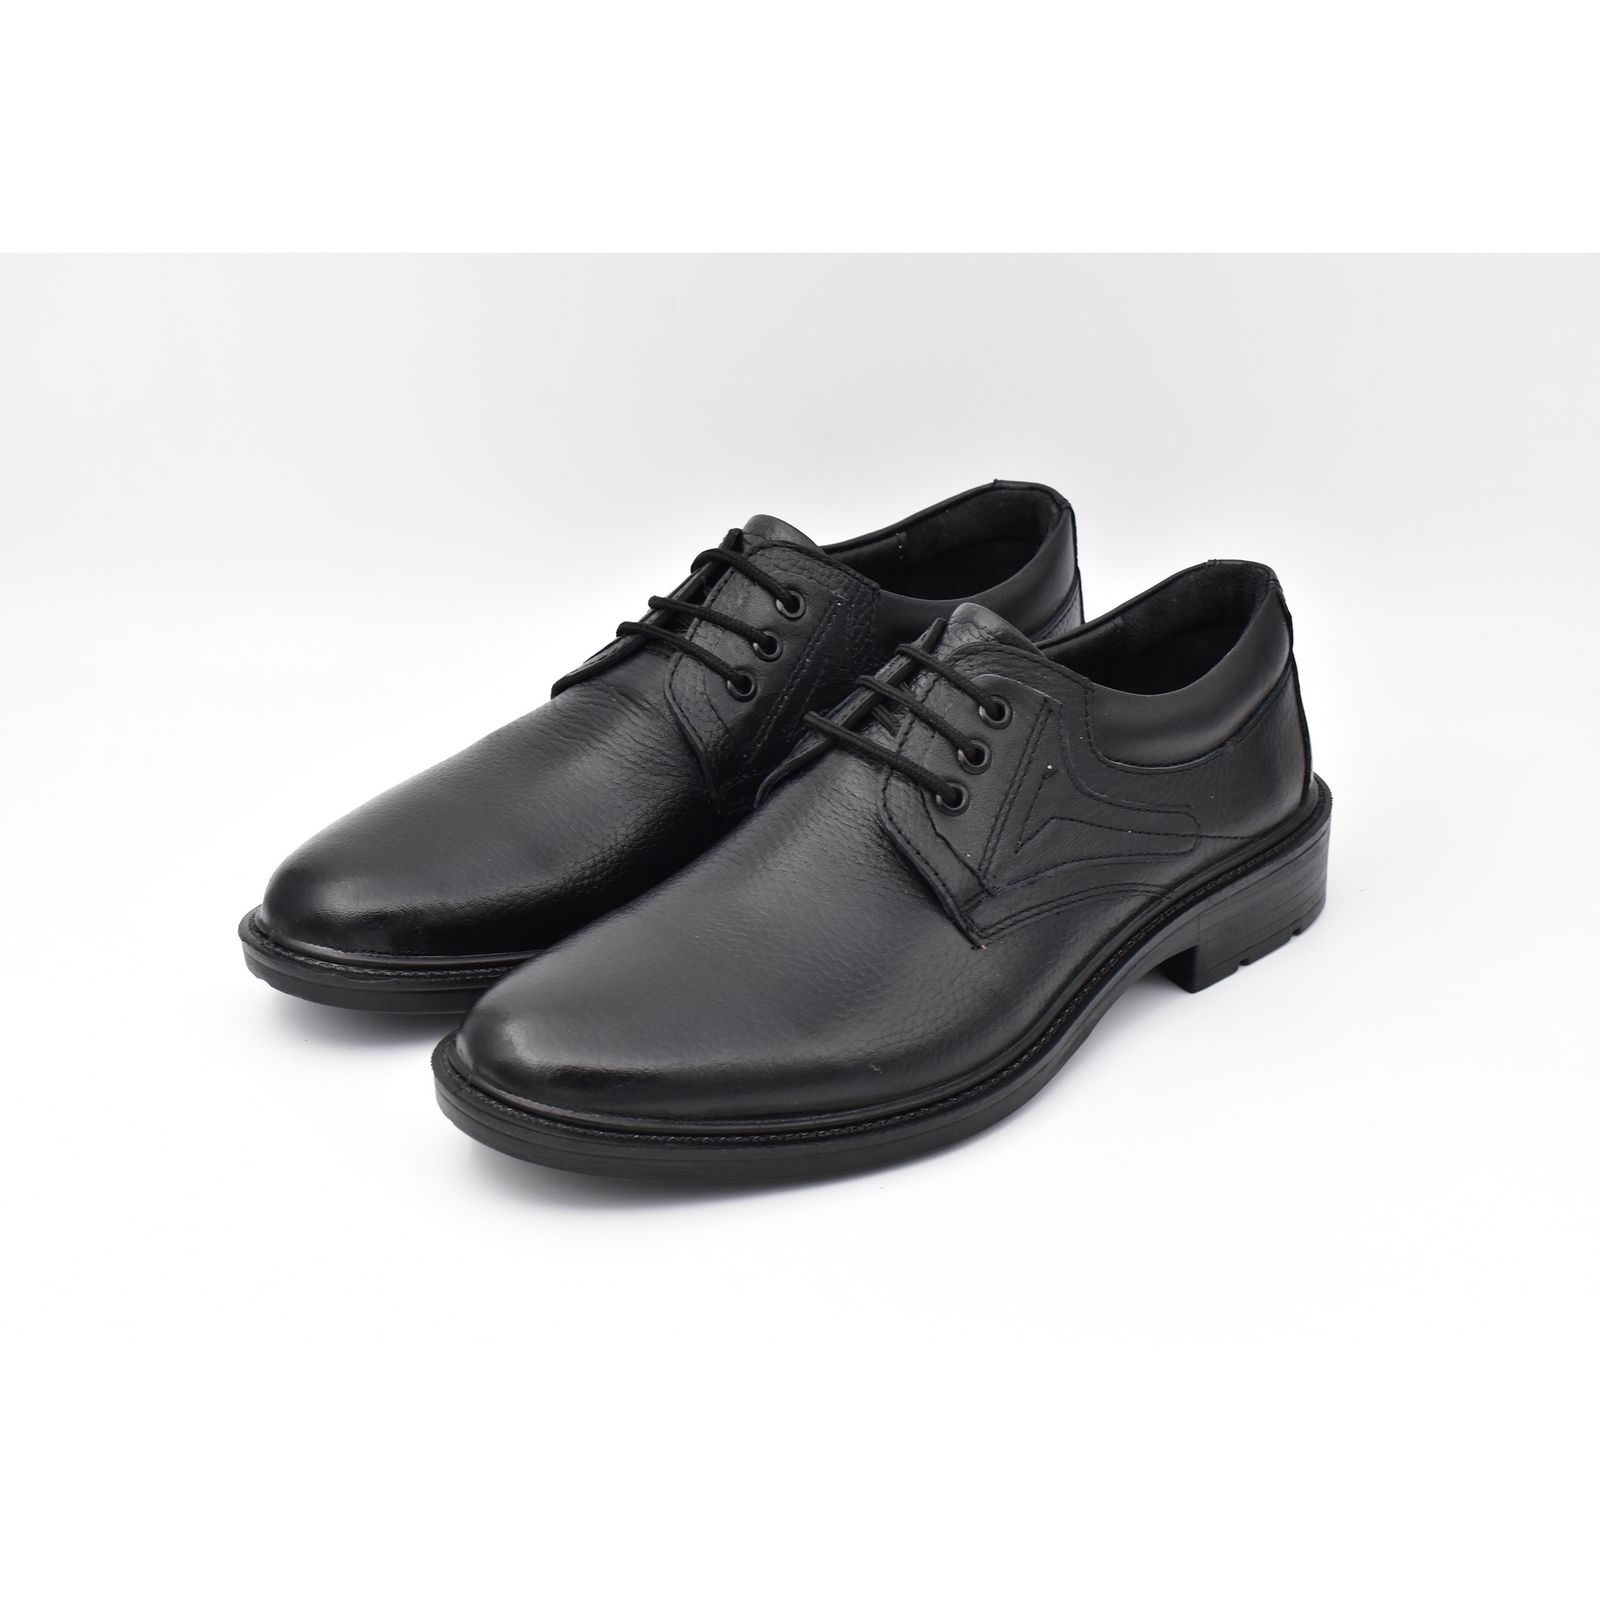 کفش مردانه پاما مدل Morano کد G1174 -  - 4